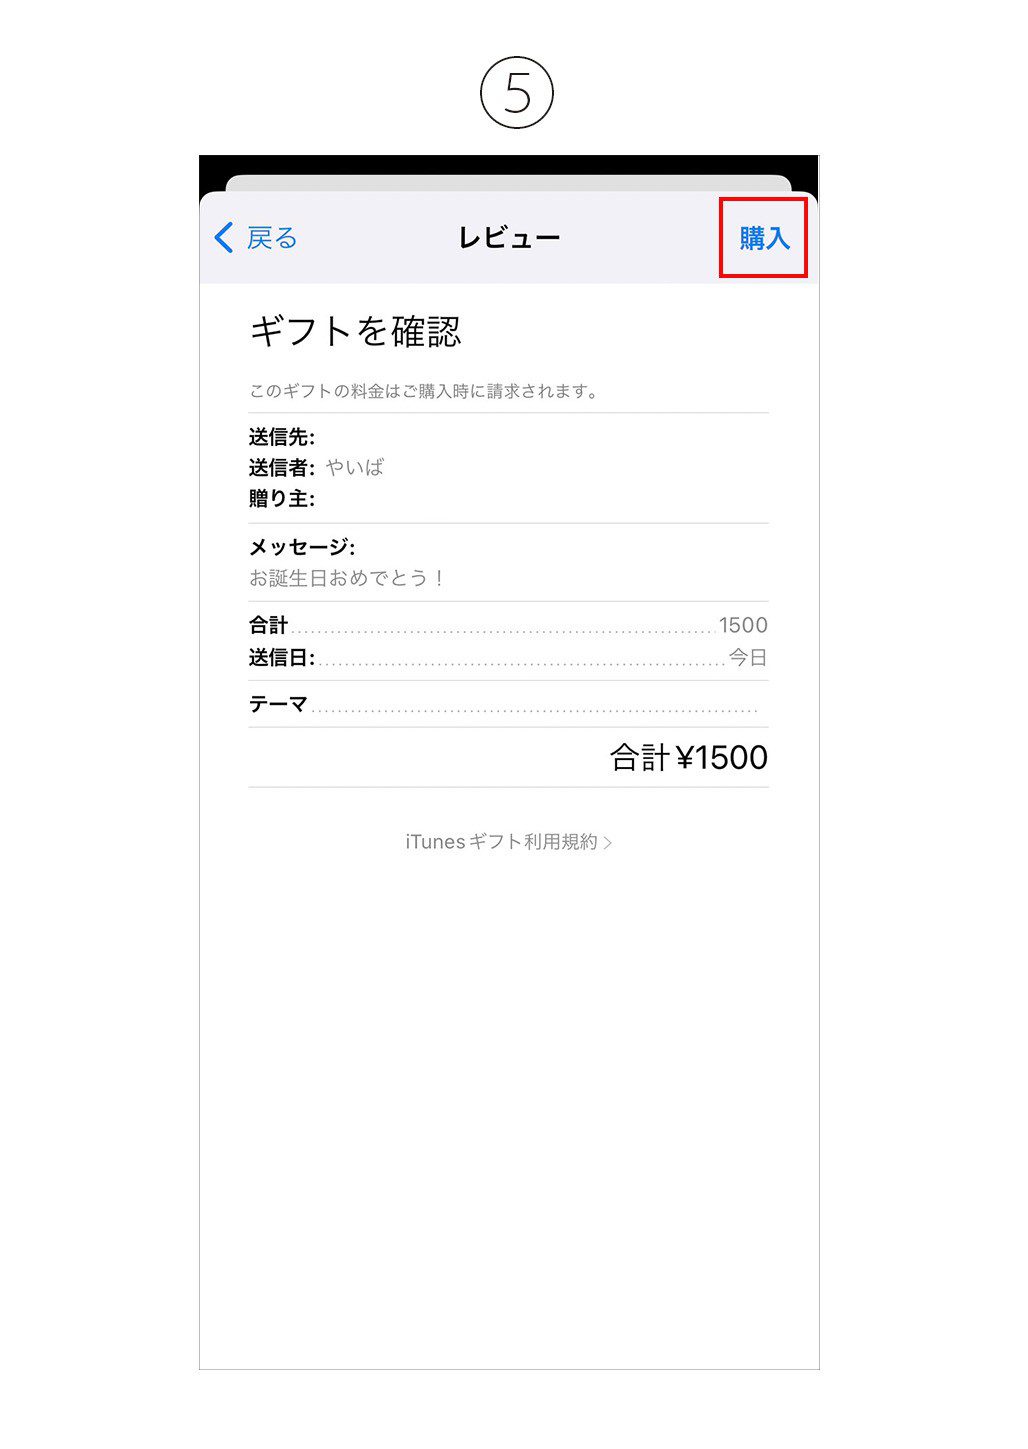 App store Appleギフトカード 送る 方法 3